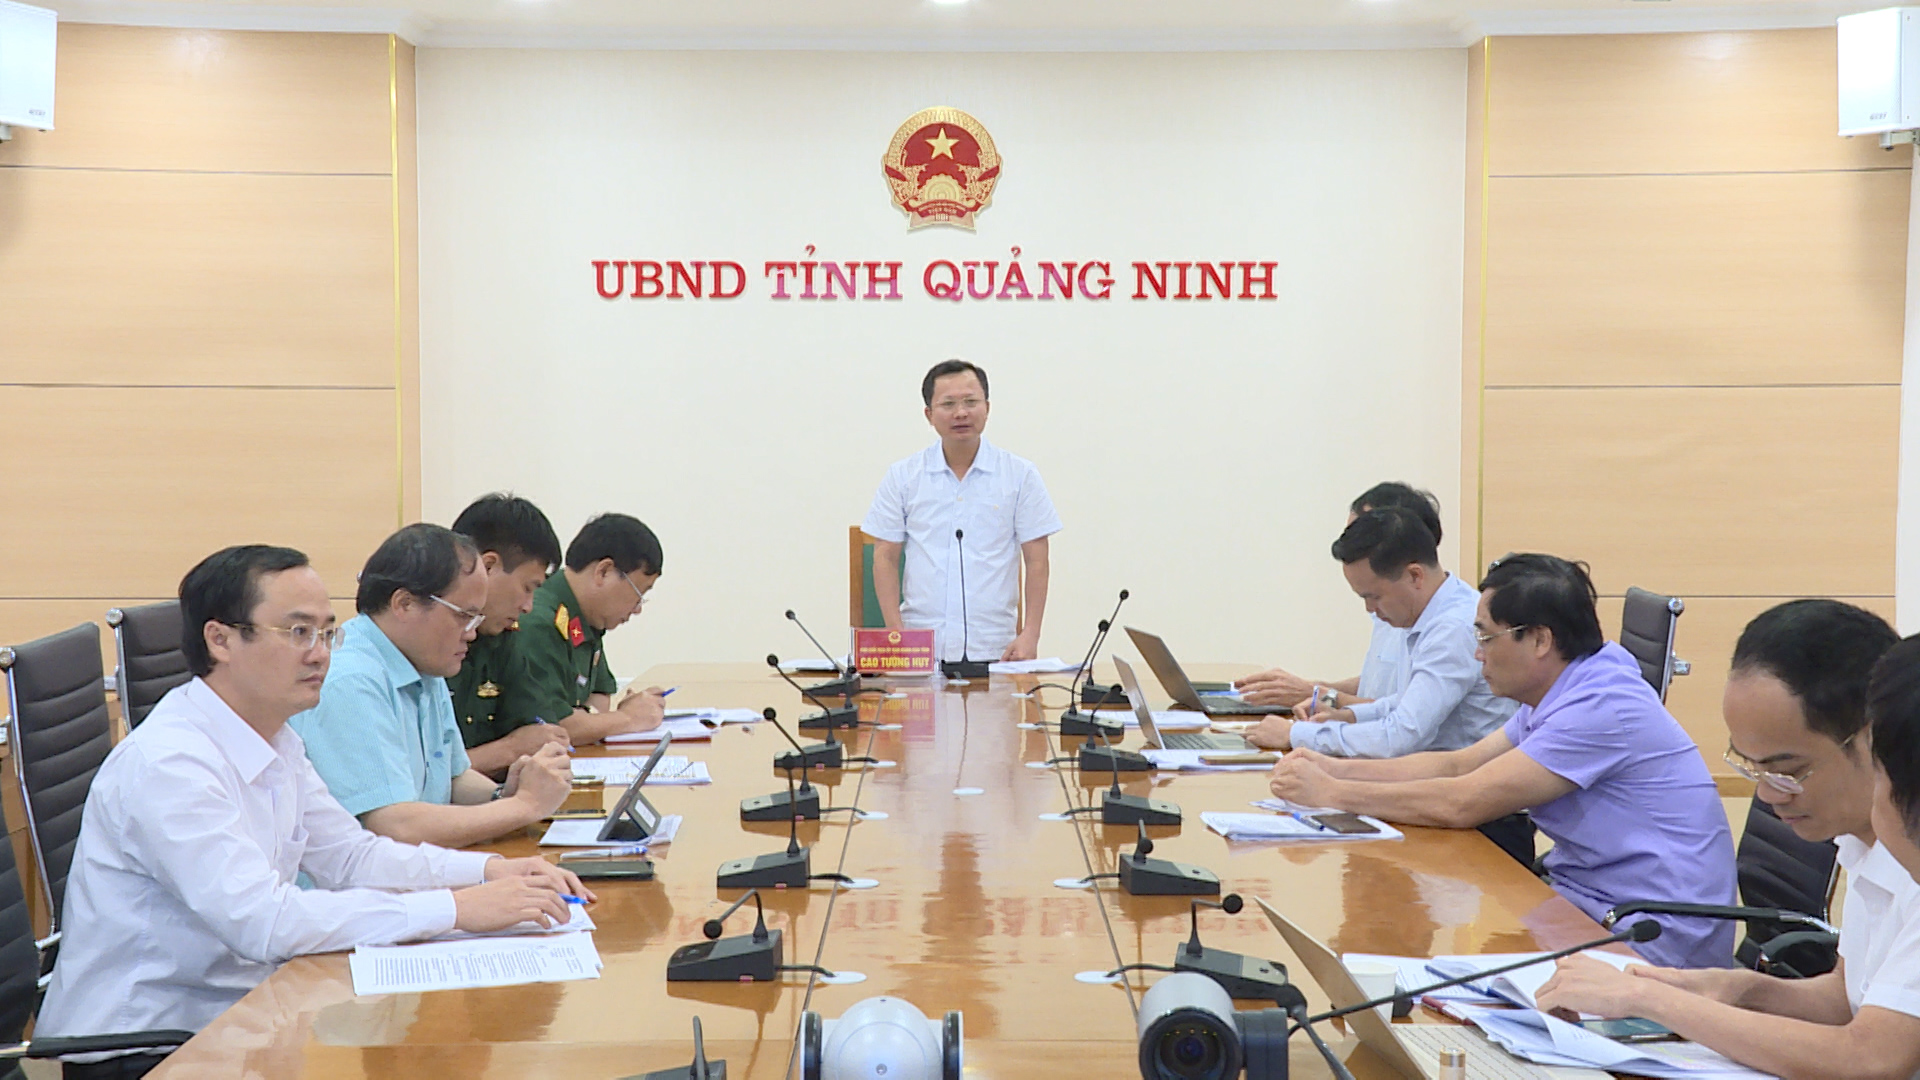 Đồng chí Cao Tường Huy, Phó Chủ tịch UBND tỉnh phát biểu kết luận cuộc họp